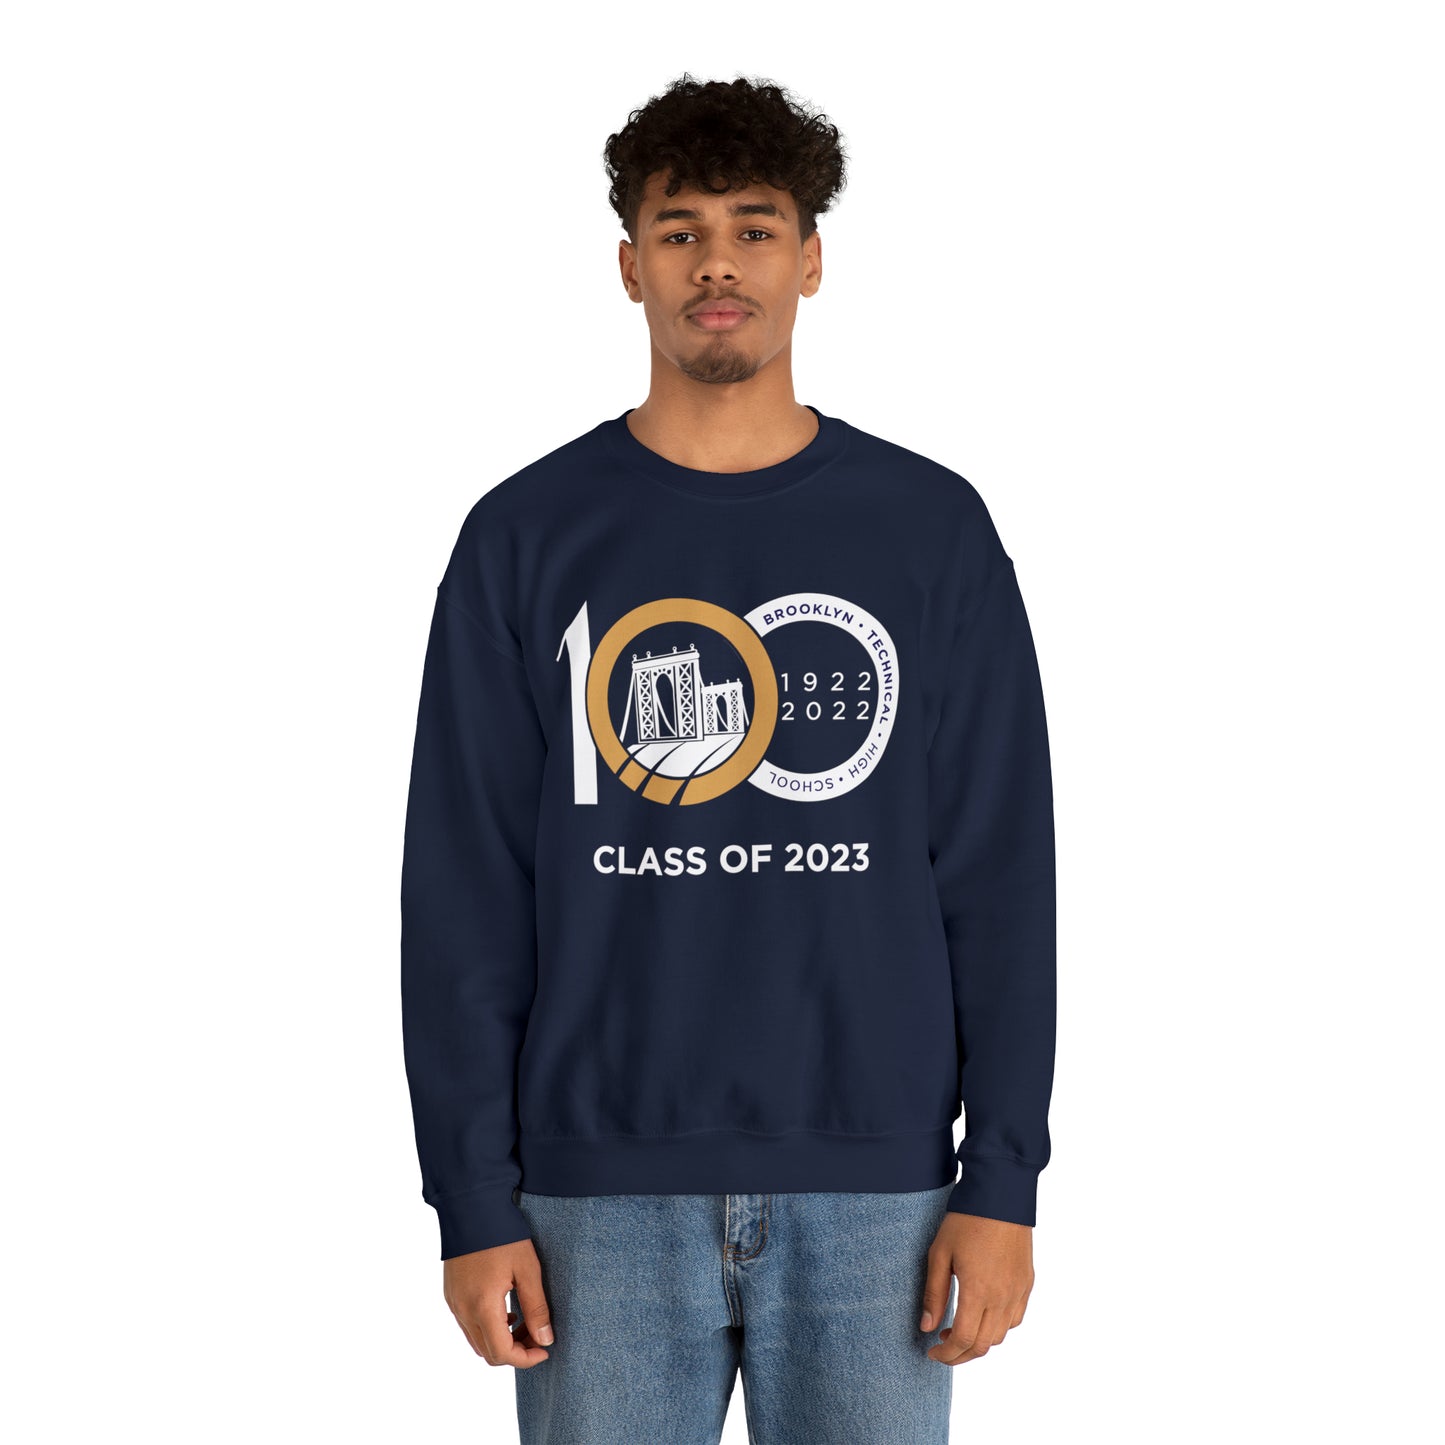 Centennial - Men's Heavy Blend Crewneck Sweatshirt - Class Of 2023